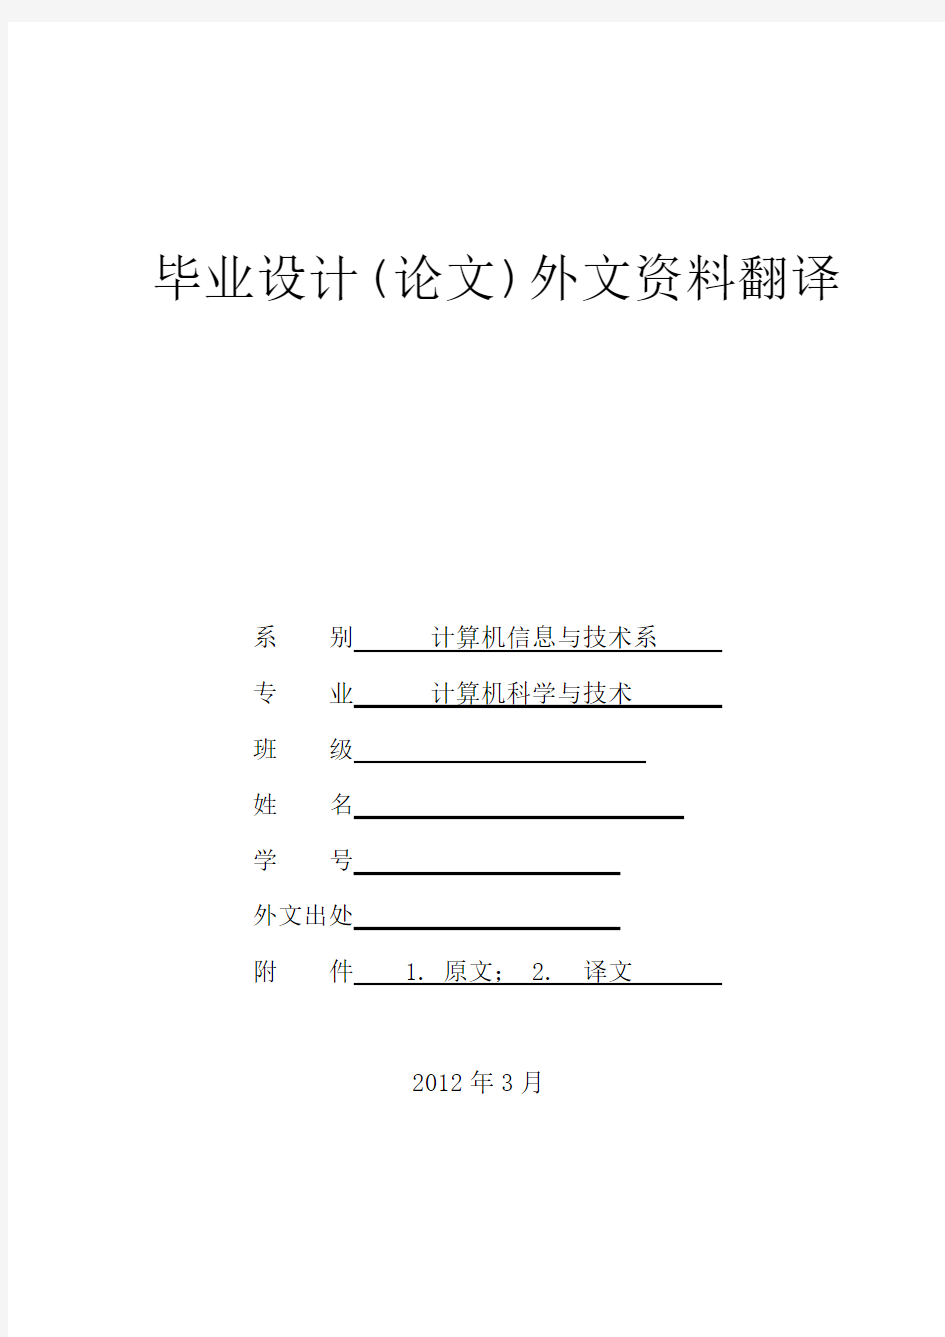 计算机系——外文翻译(中英对照,3000汉字左右)